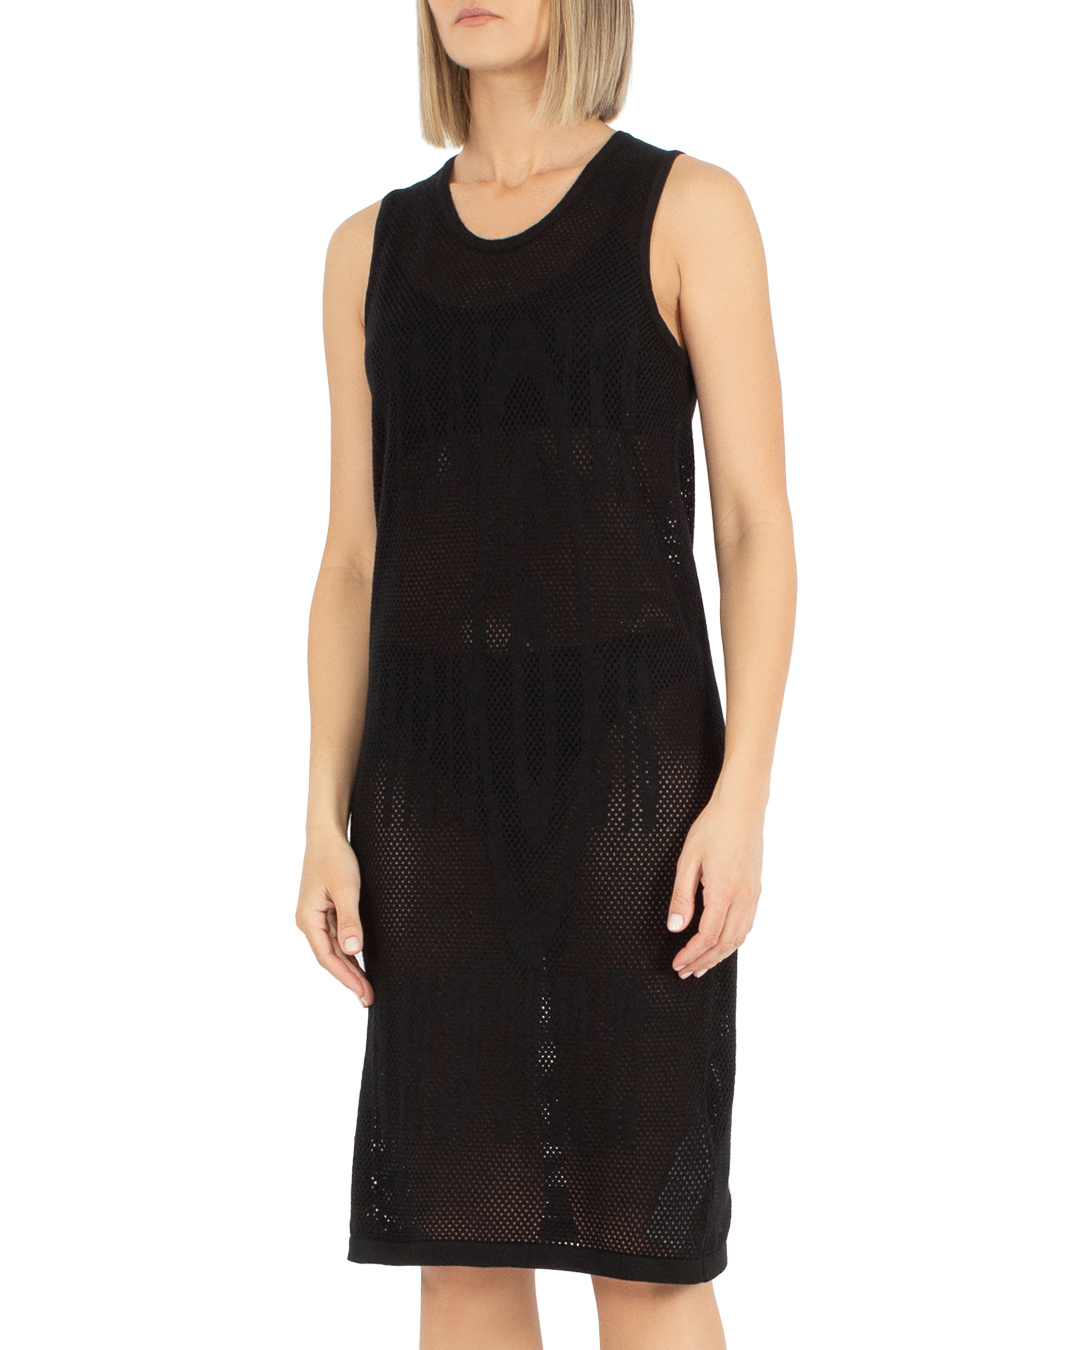 платье MM6 Maison Margiela S62NL0046 черный l, размер l - фото 3